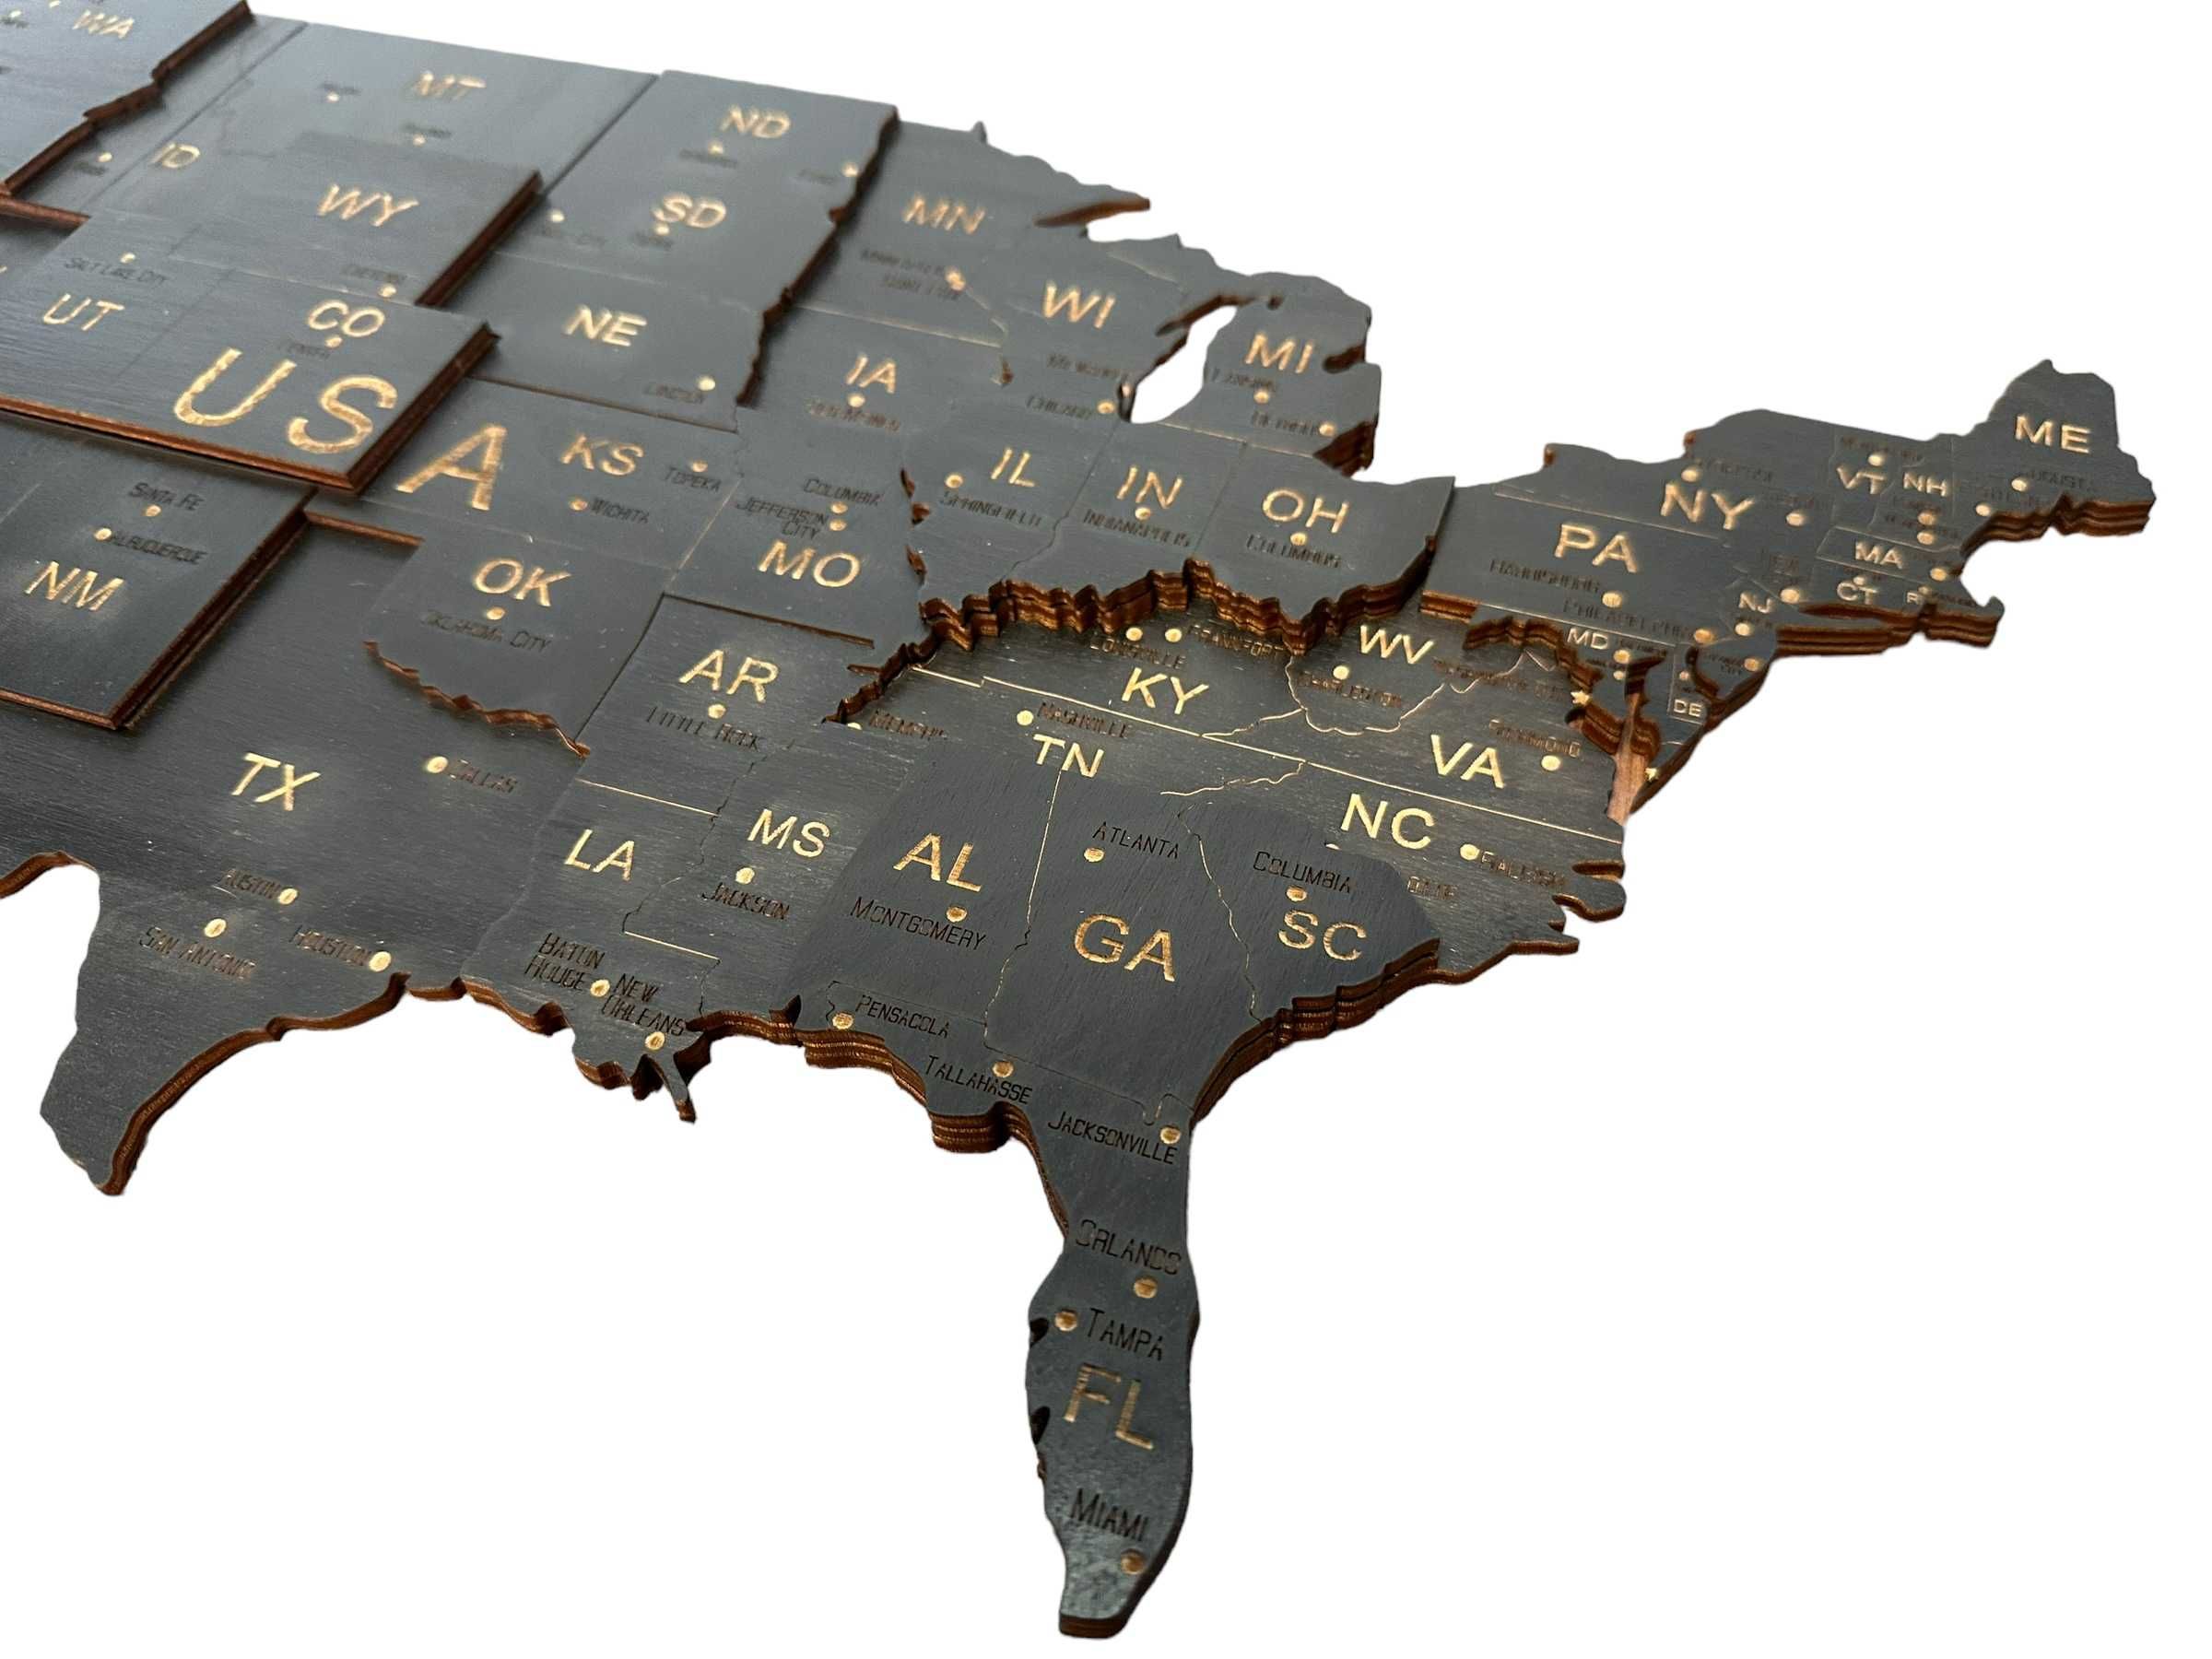 Mapa 3D drewniana USA -Czarny, 158cm Stany Zjednoczone, prezent U.S.A.